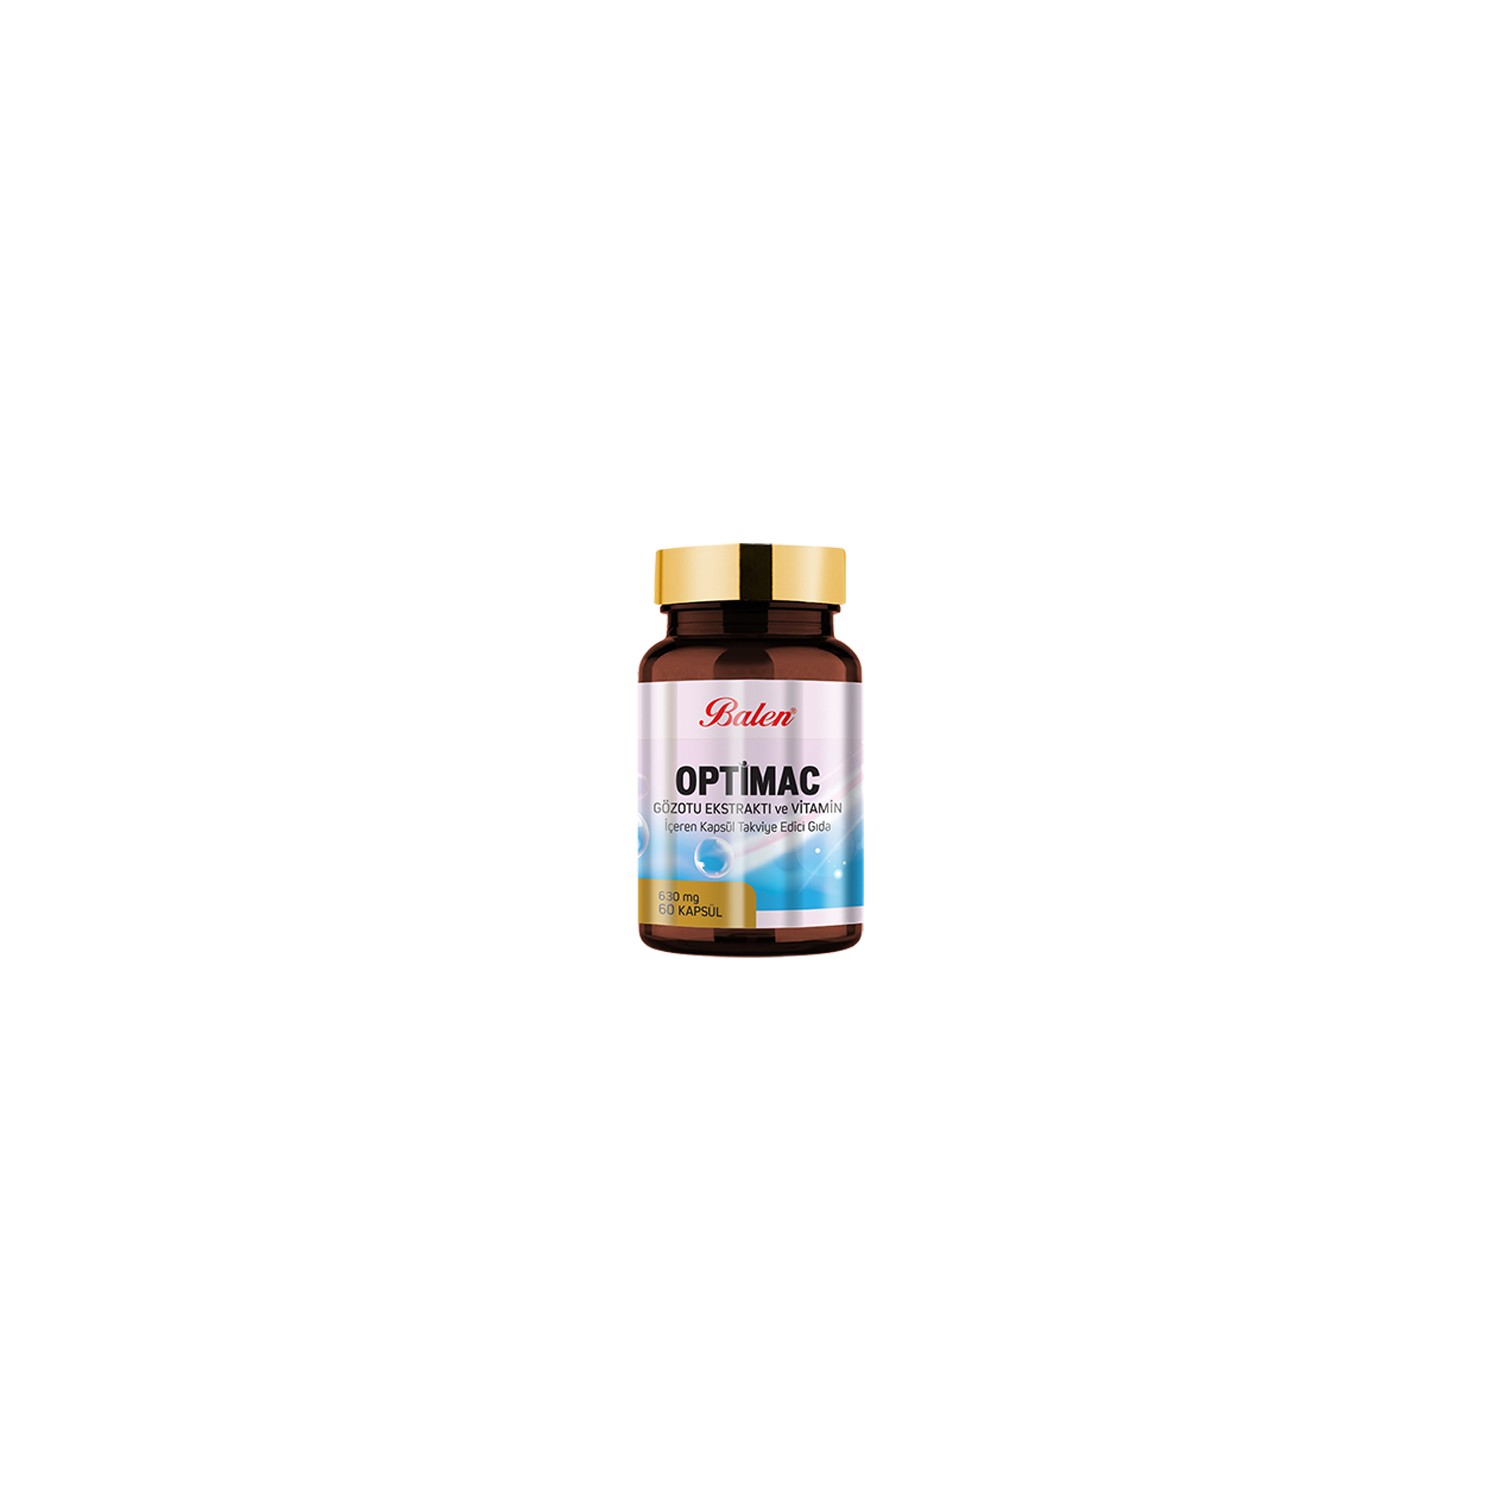 Экстракт очанки Balen Optimac Eyewort Extract, 60 капсул витамин в12 gls 60 капсул по 400 мг